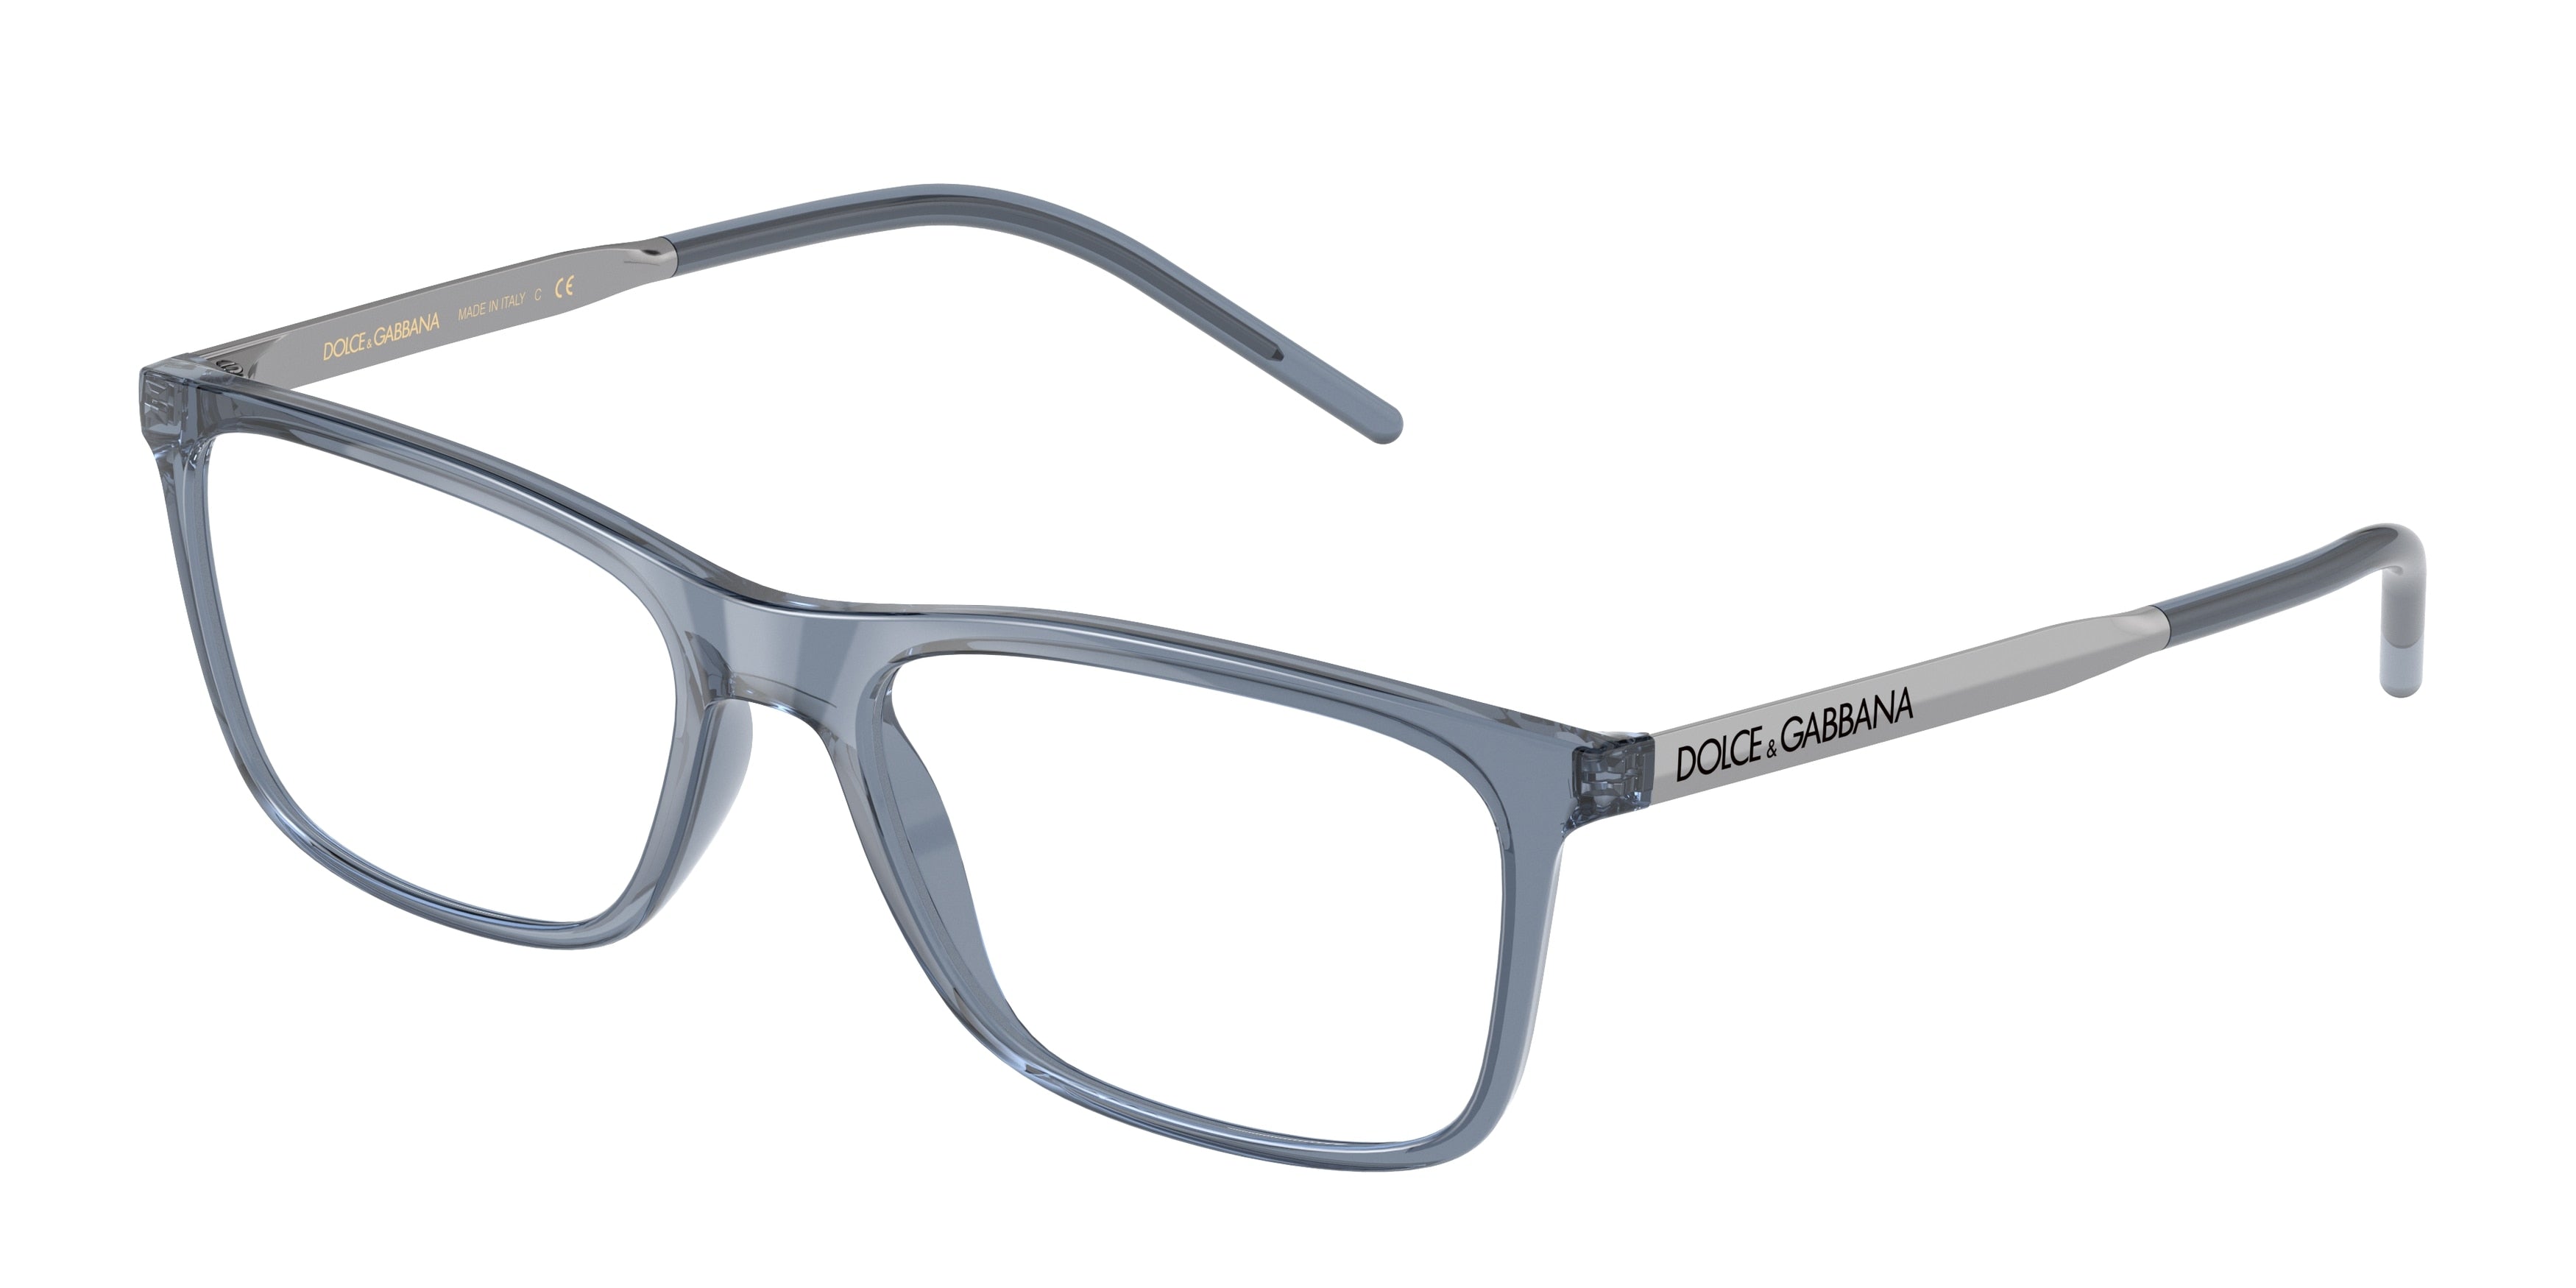 DOLCE & GABBANA DG5044 Rectangle Eyeglasses